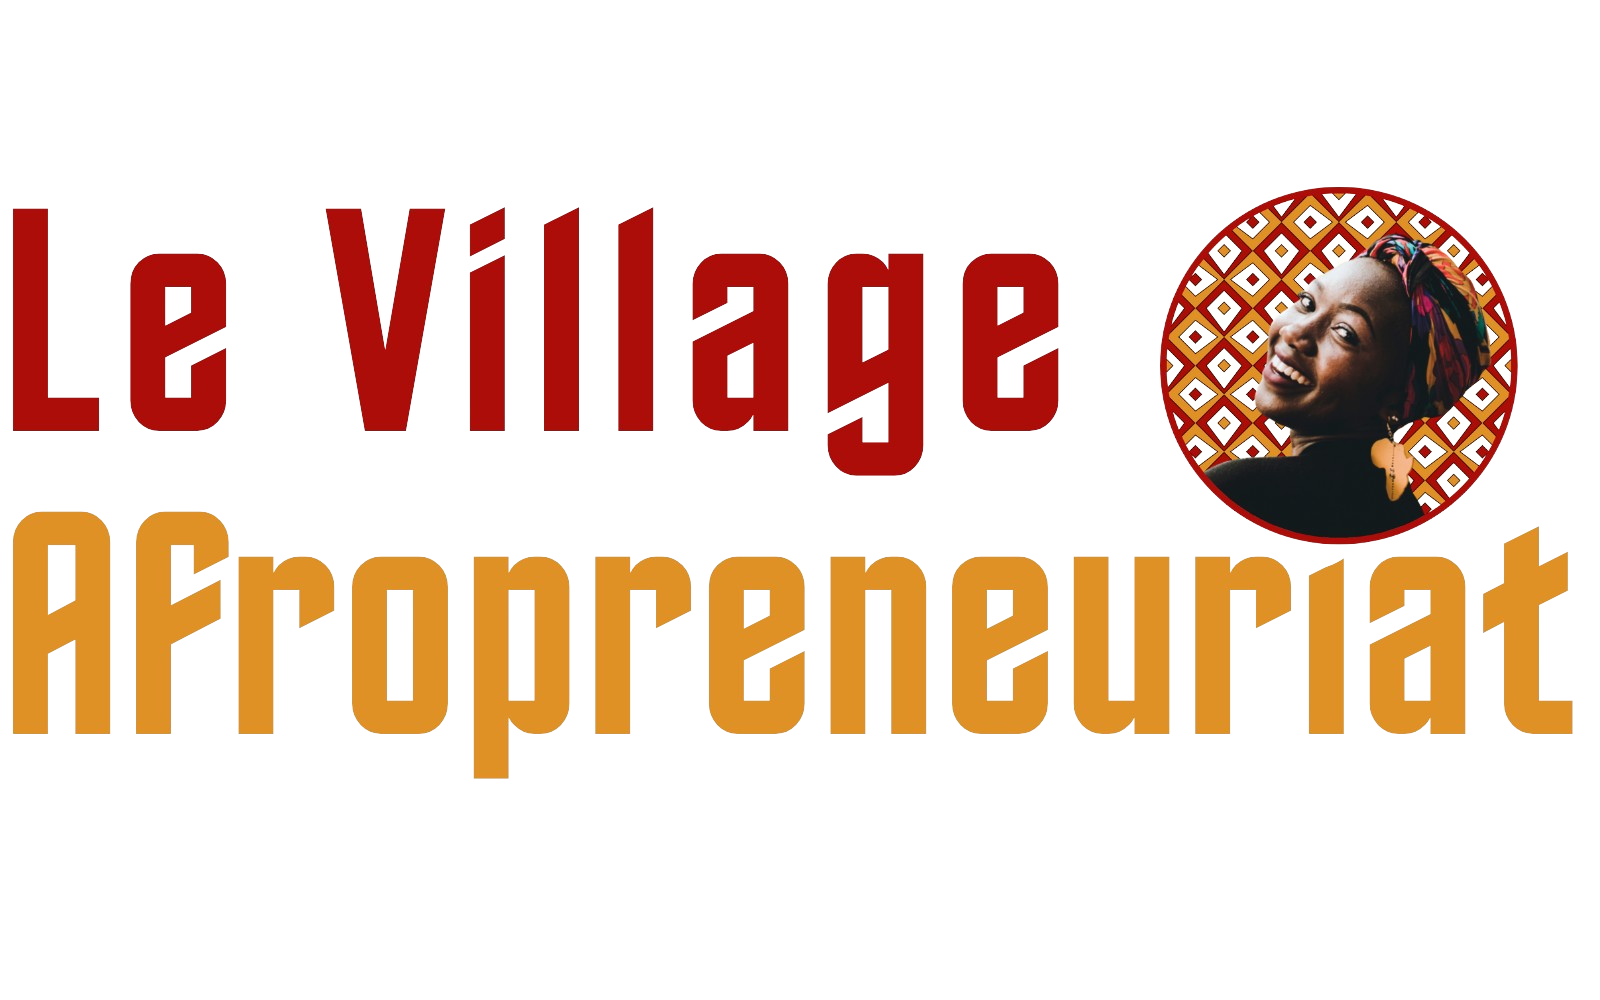 Le Village Afropreneuriat